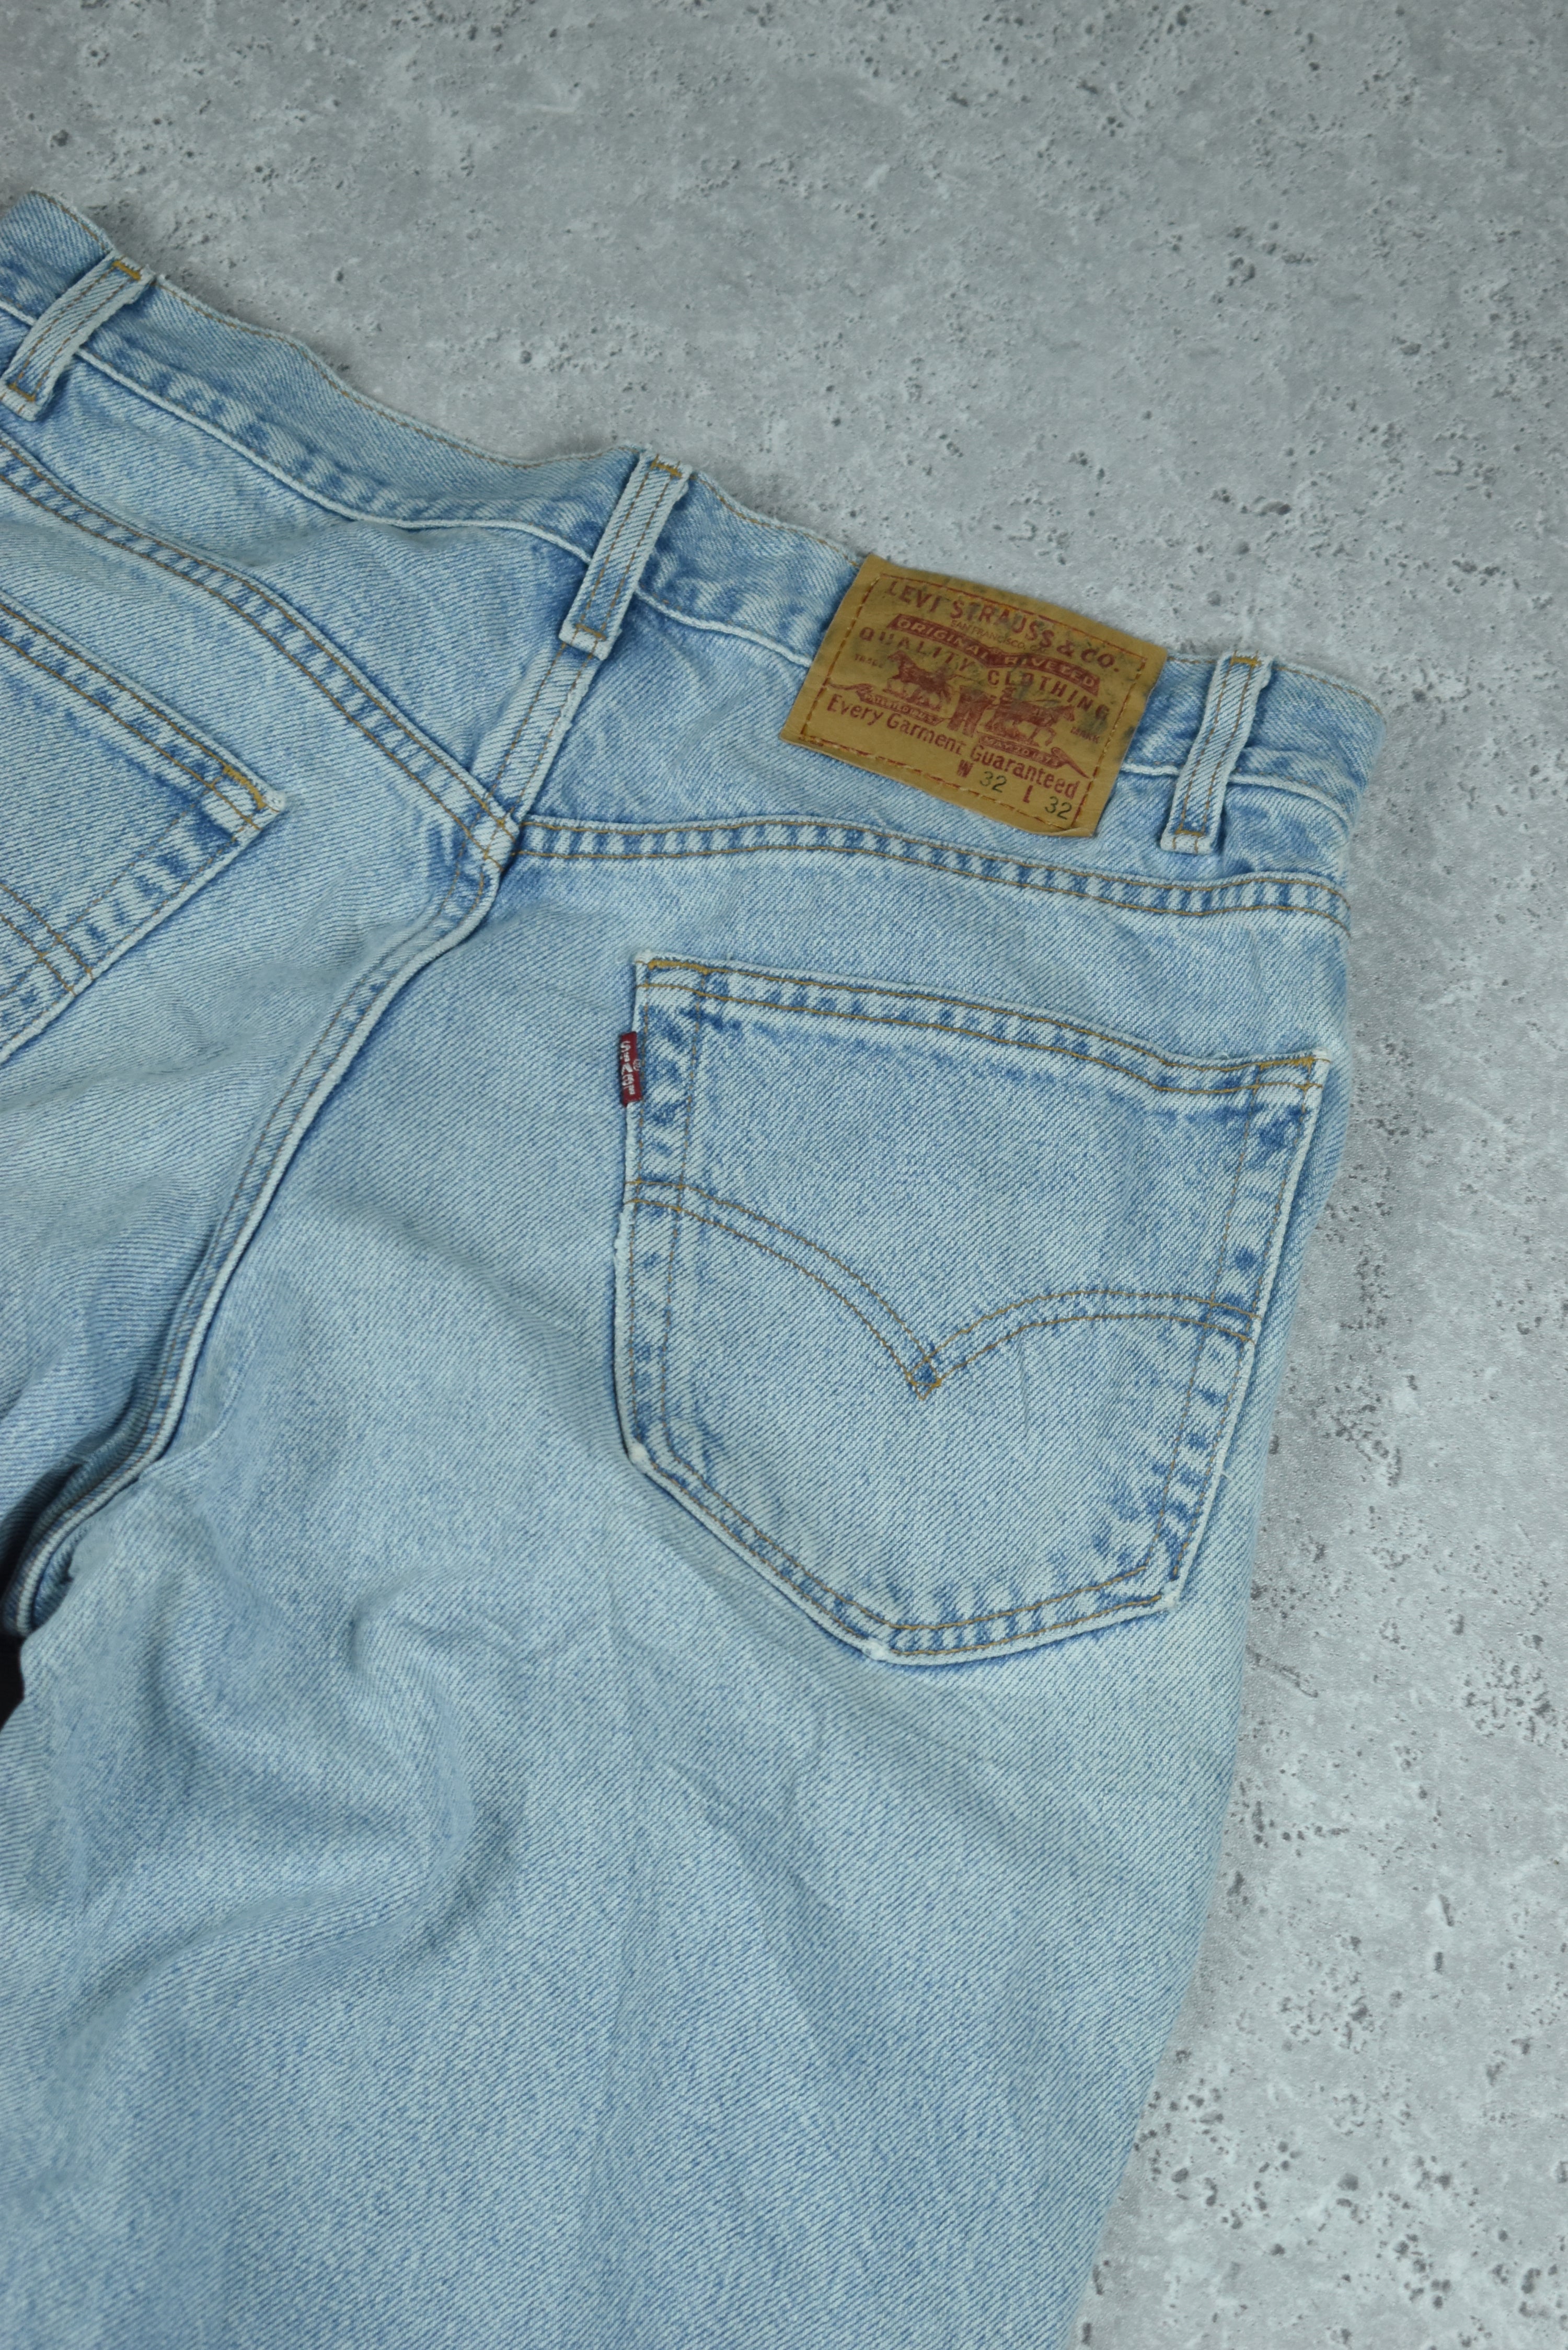 Vintage Levis Relaxed Fit Denim Jeans 32x32